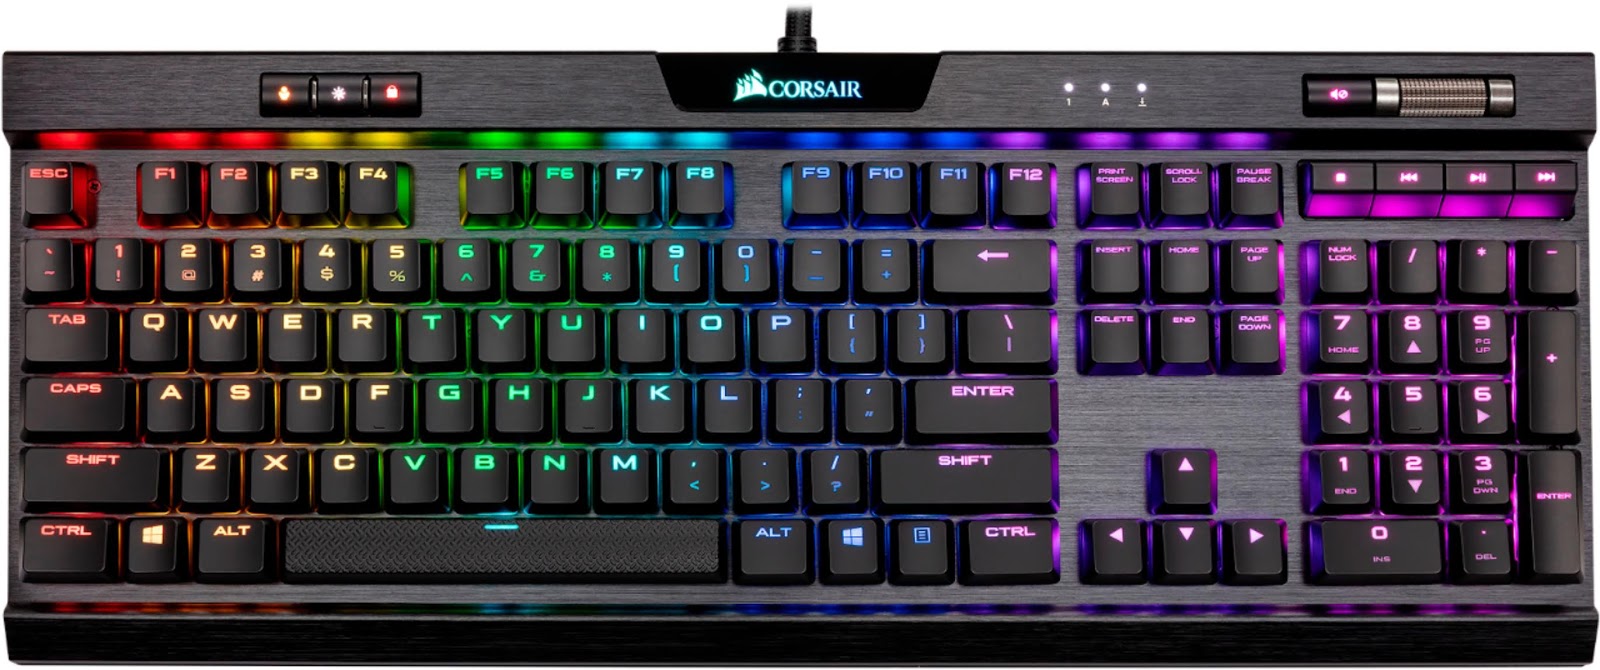 Tombol Kombinasi Keyboard Yang Digunakan Untuk Membatalkan Perintah Adalah